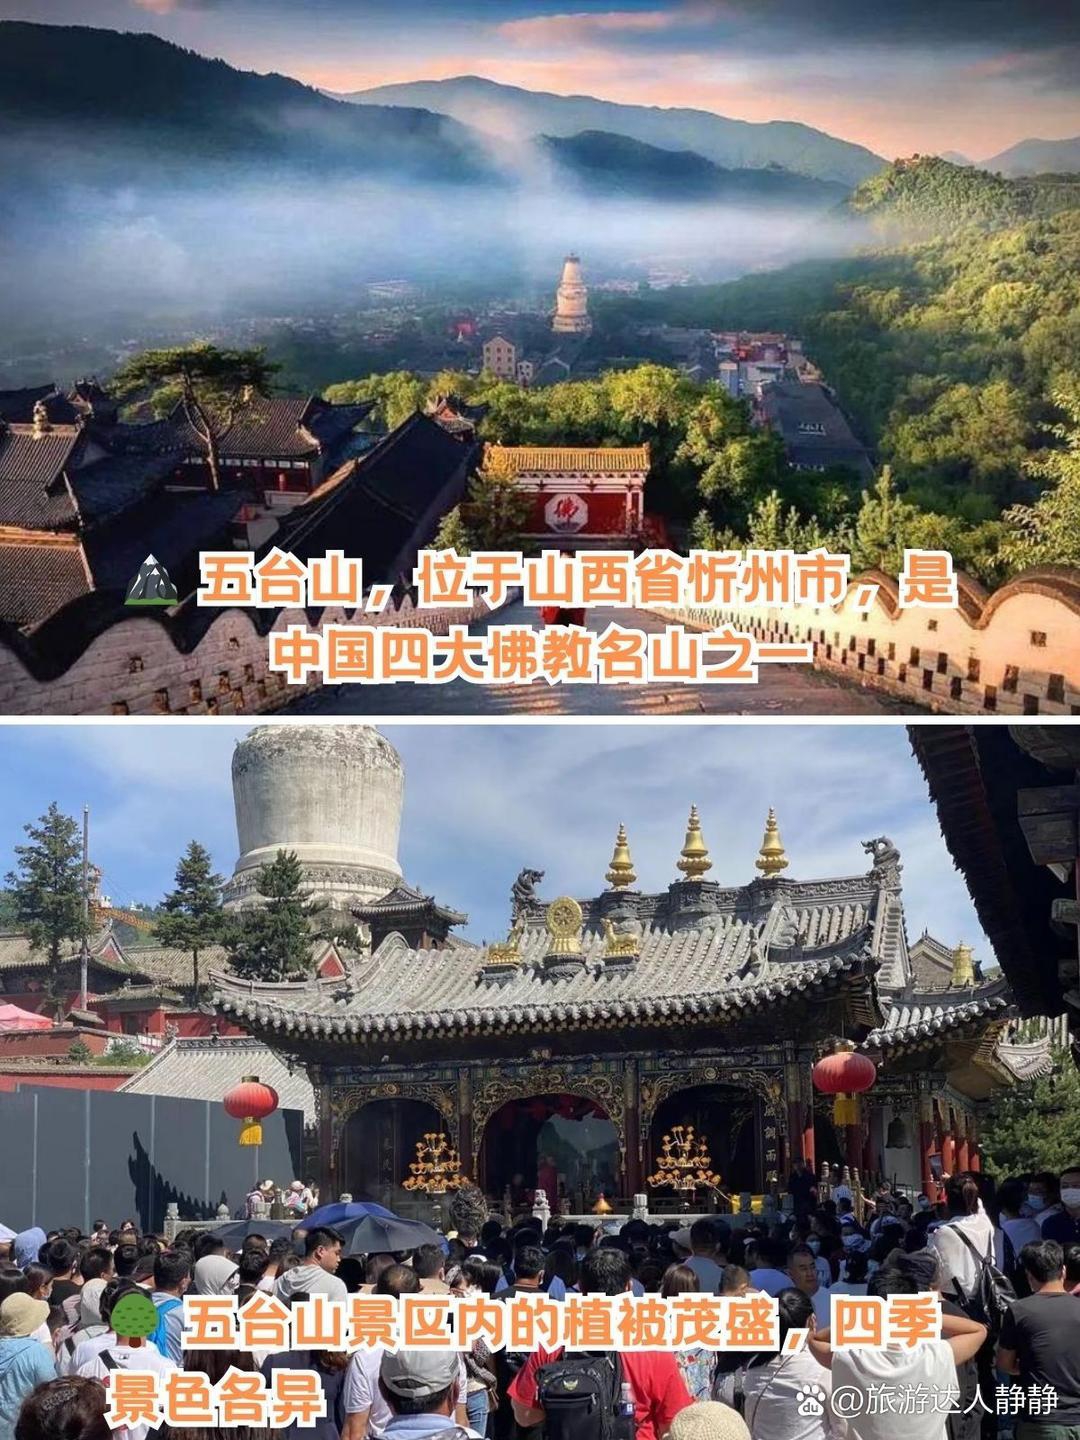 五台山，位于山西省忻州市，是中国四大佛教名山之一。这里山峰耸立，云雾缭绕，仿佛人间仙境。踏上五台山，